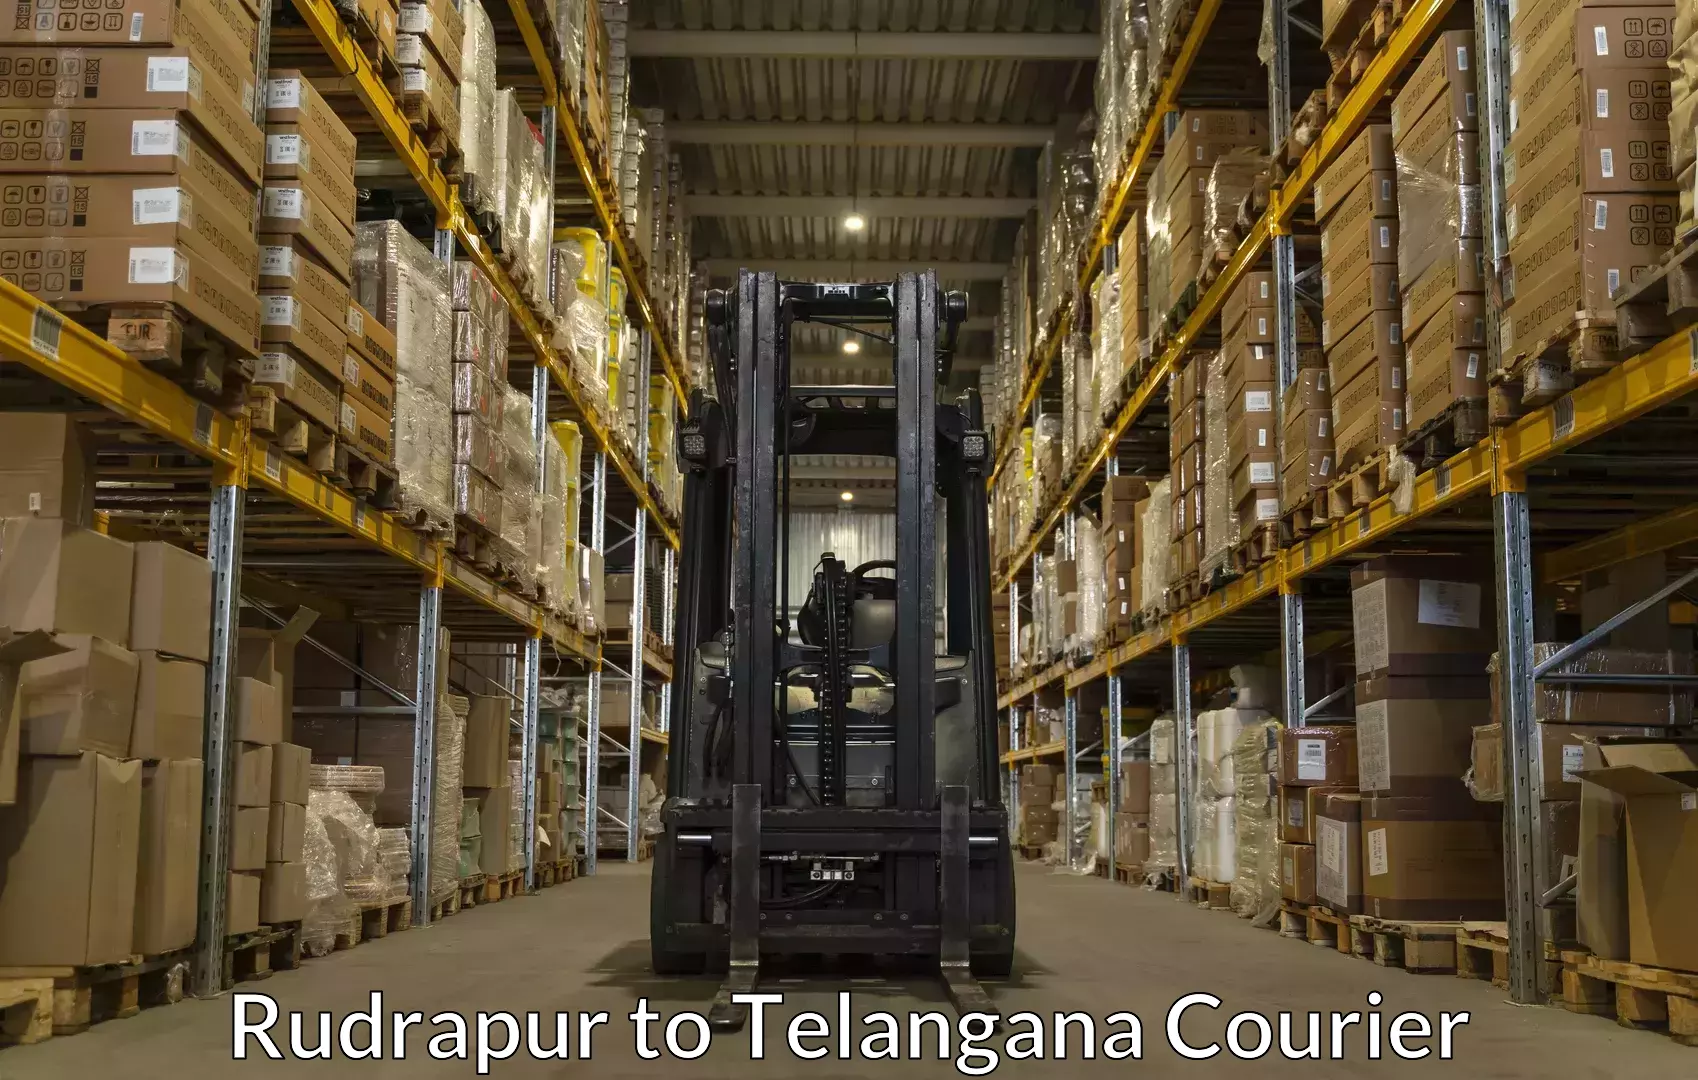 Luggage transport rates Rudrapur to Gangadhara